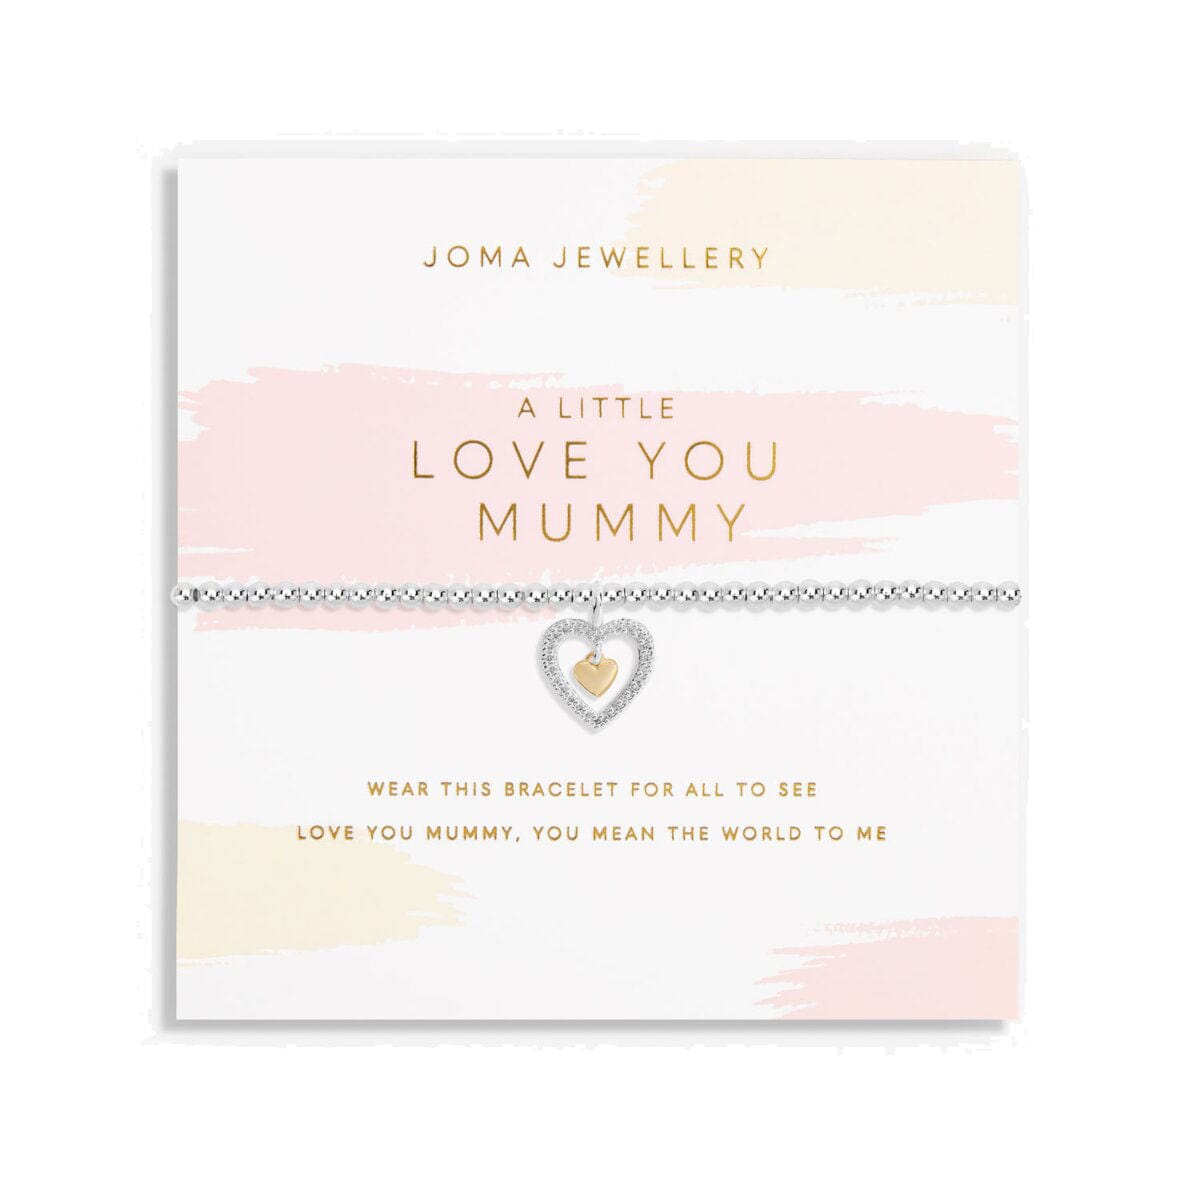 Joma Jewellery Bracelet Joma Jewellery Bracelet - A Little Love You Mummy